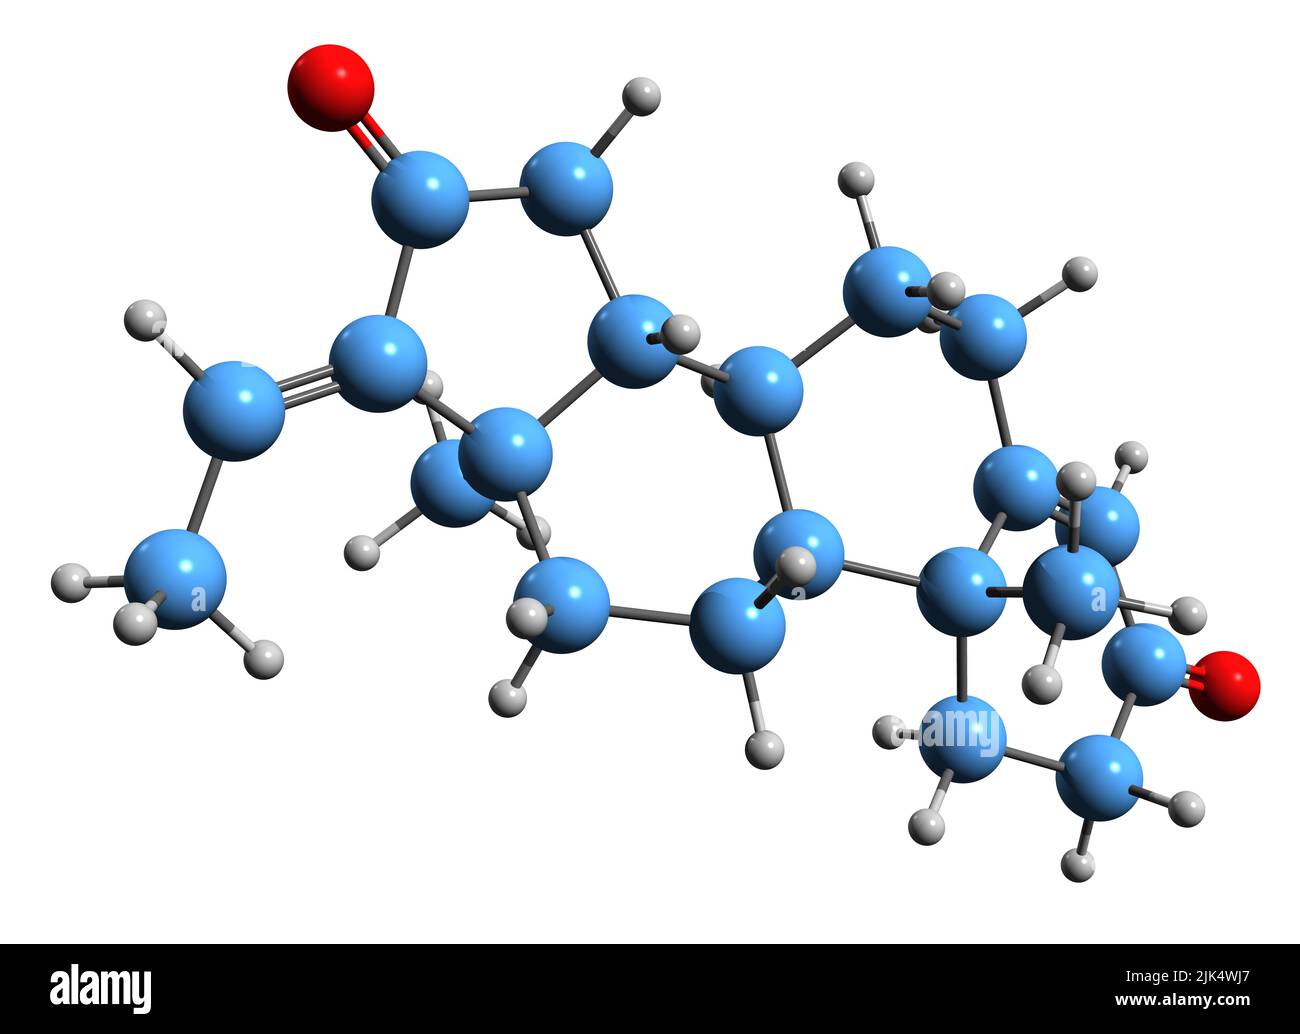 3D Bild der Skelettformel von Guggulsterone - molekularchemische Struktur der bioaktiven Komponente des Gummiharzes auf weißem Hintergrund isoliert Stockfoto